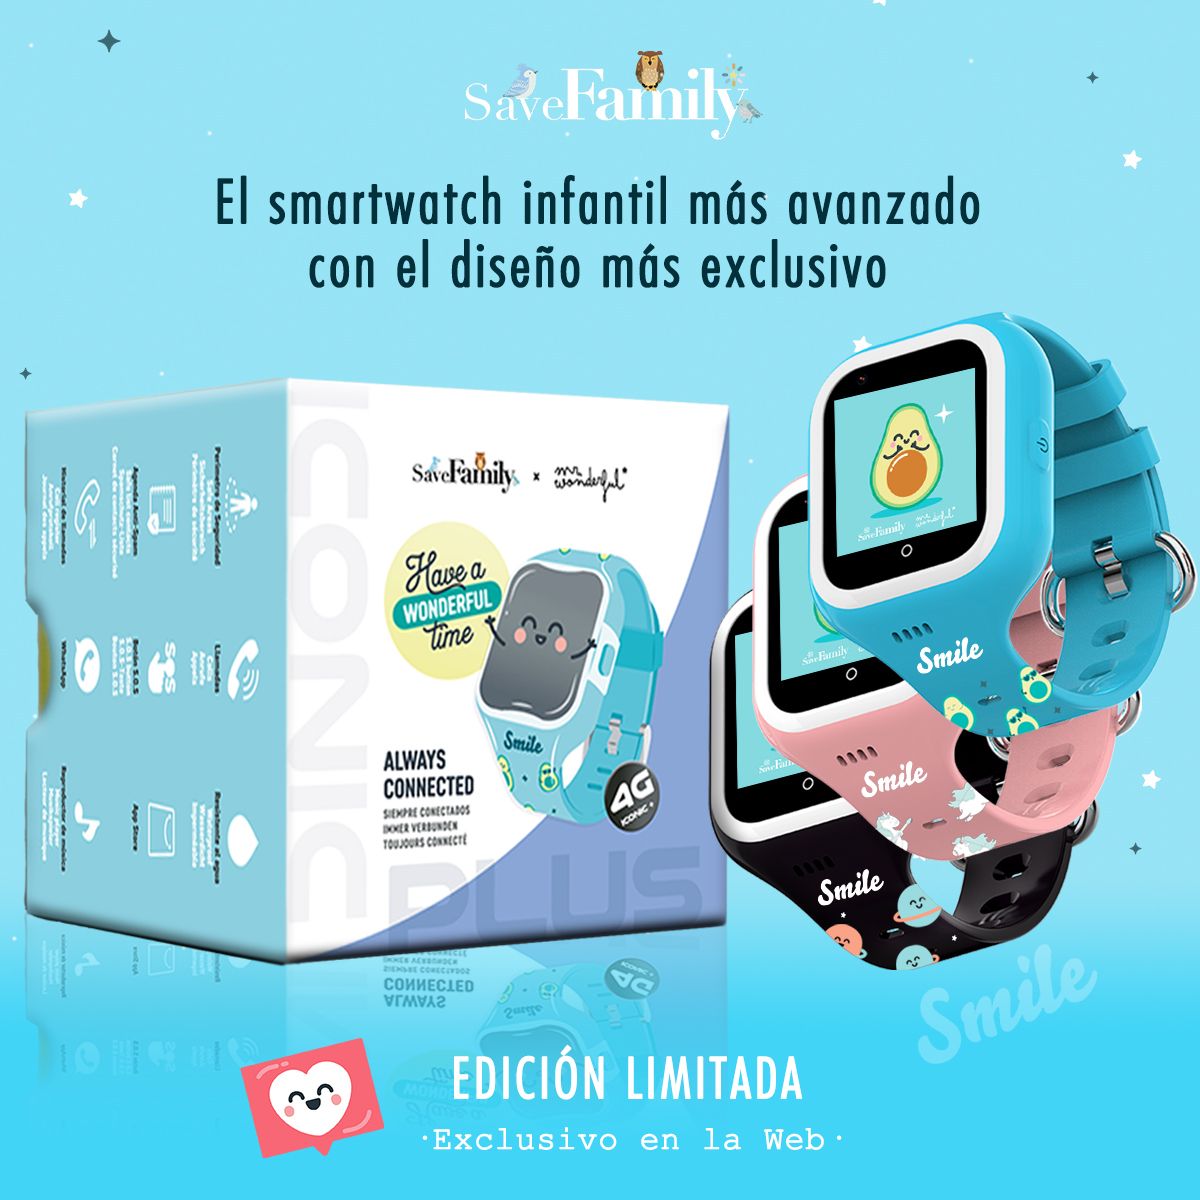 SaveFamily, en colaboración con Mr. Wonderful, lanza al mercado un nuevo smartwatch infantil y juvenil